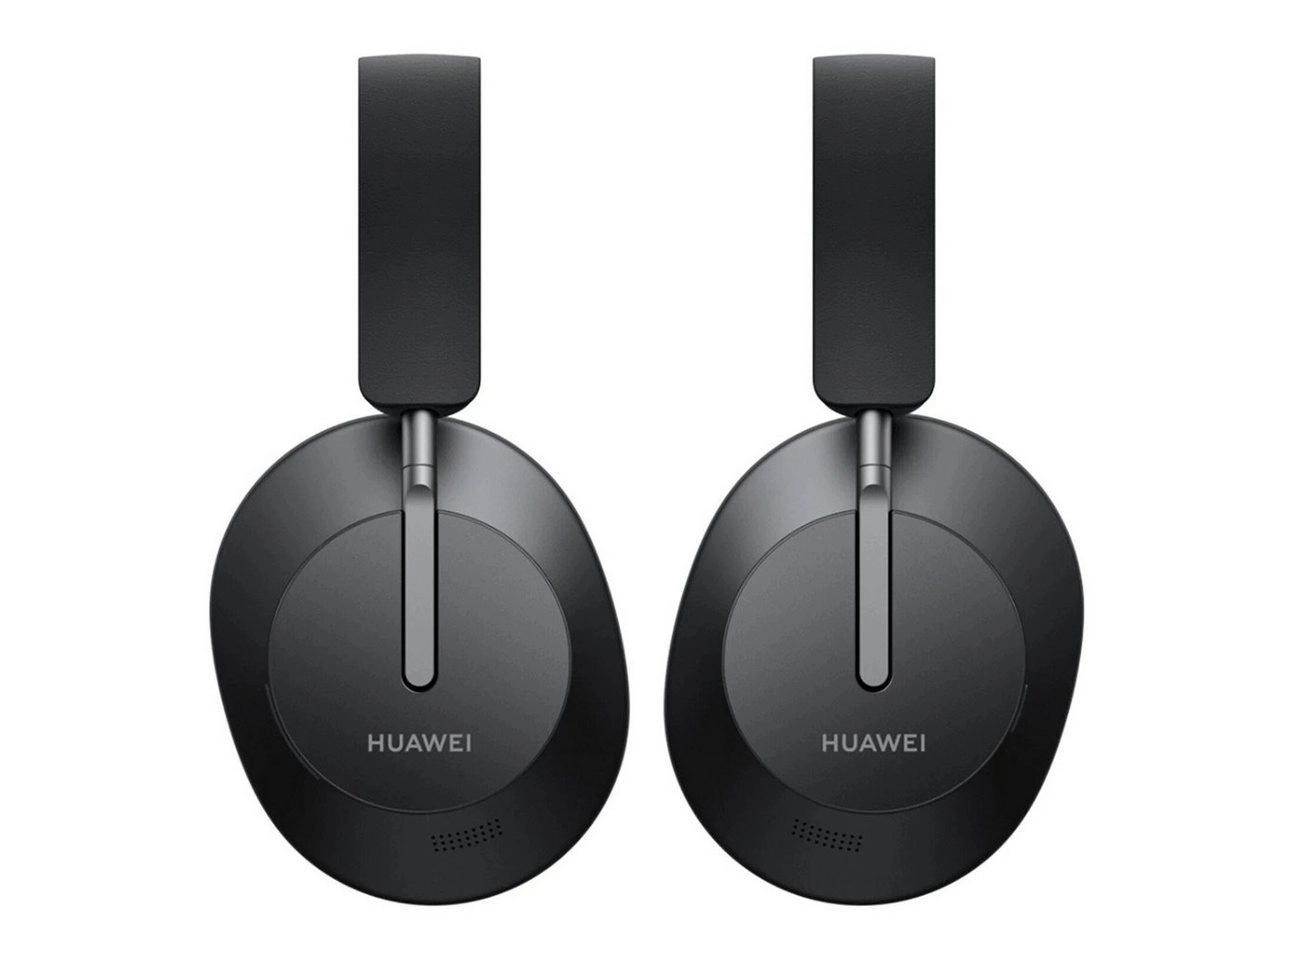 HUAWEI FreeBuds Studio, kabellose ANC Kopfhörer mit Bluetooth in Graphite Black / Inklusive Tasche, Ladekabel USB-C, Schnellstartanleitung, Garantiekarte und Sicherheitsinformationen